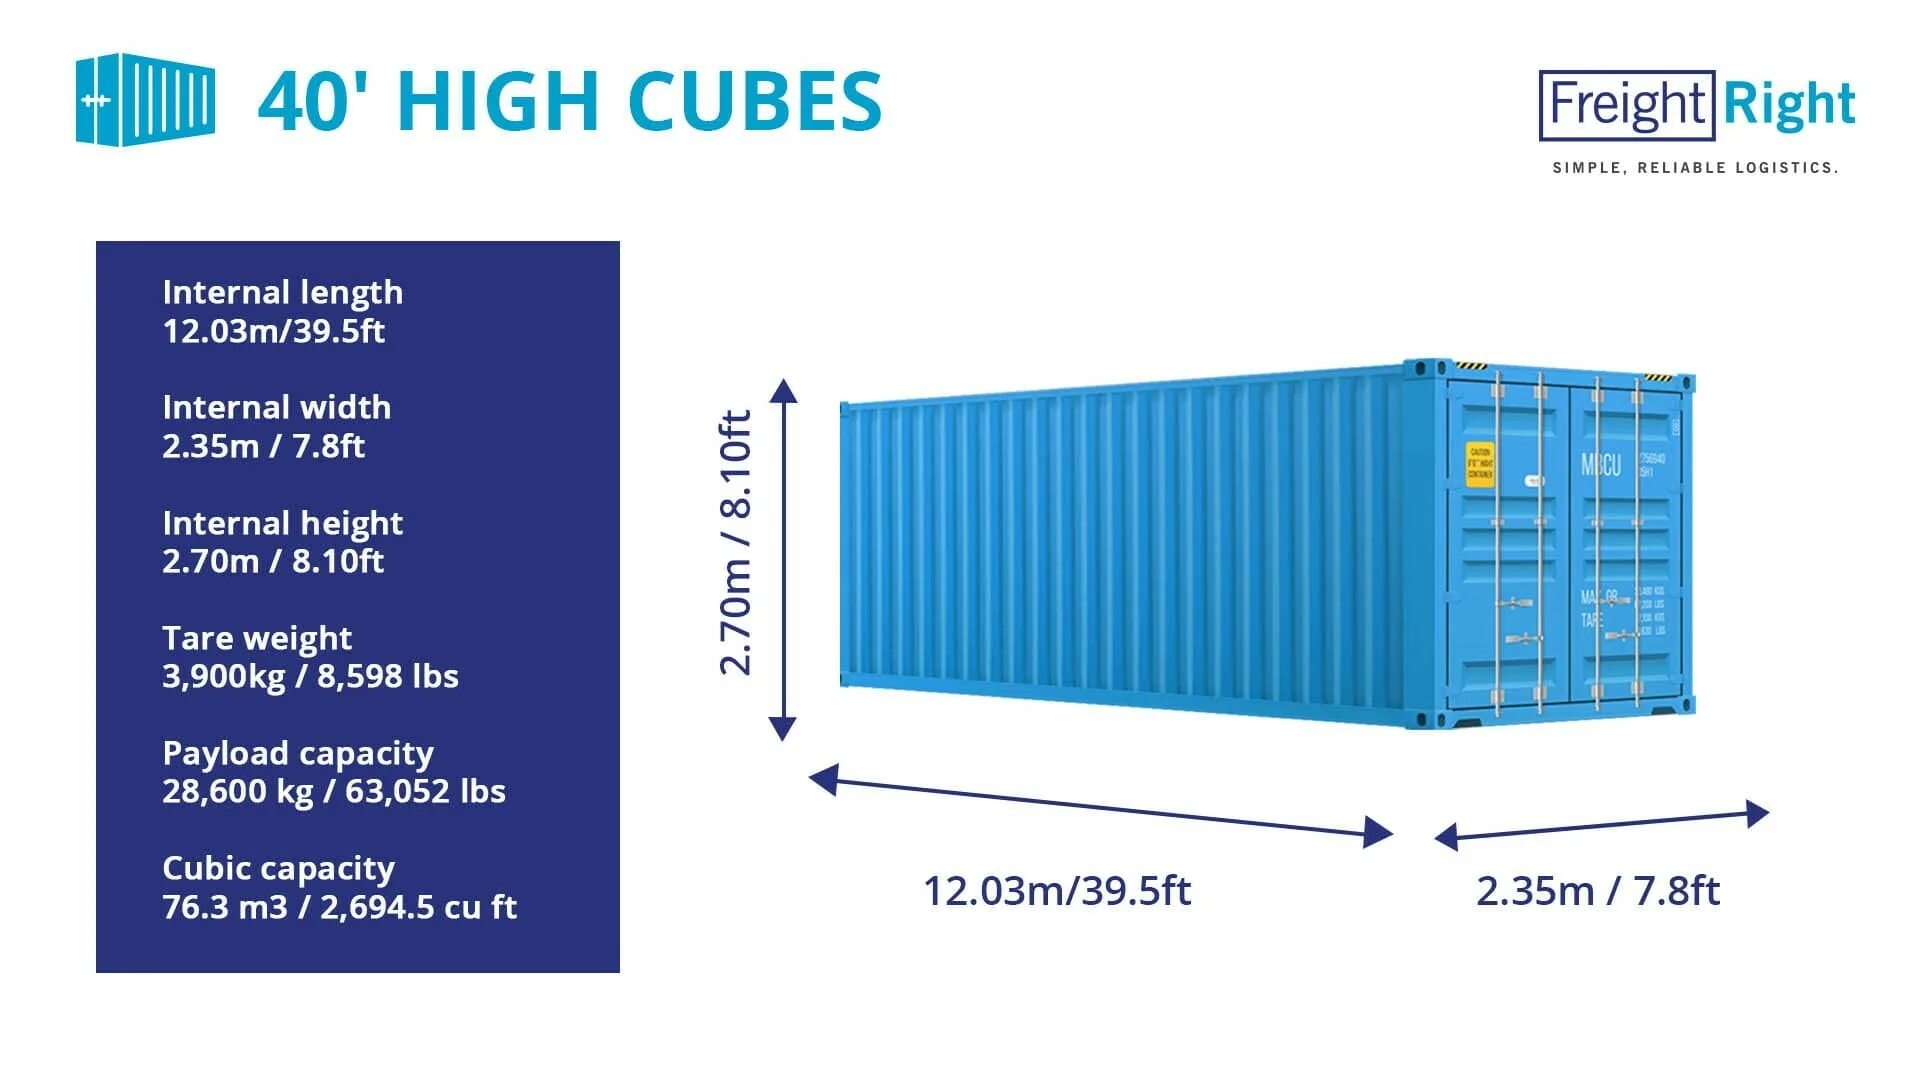 Контейнер 40 фут Хай Кьюб размер. Габариты 40 фут контейнера High Cube. Морской контейнер 20 футов High Cube. Габариты 20 футового контейнера High Cube.